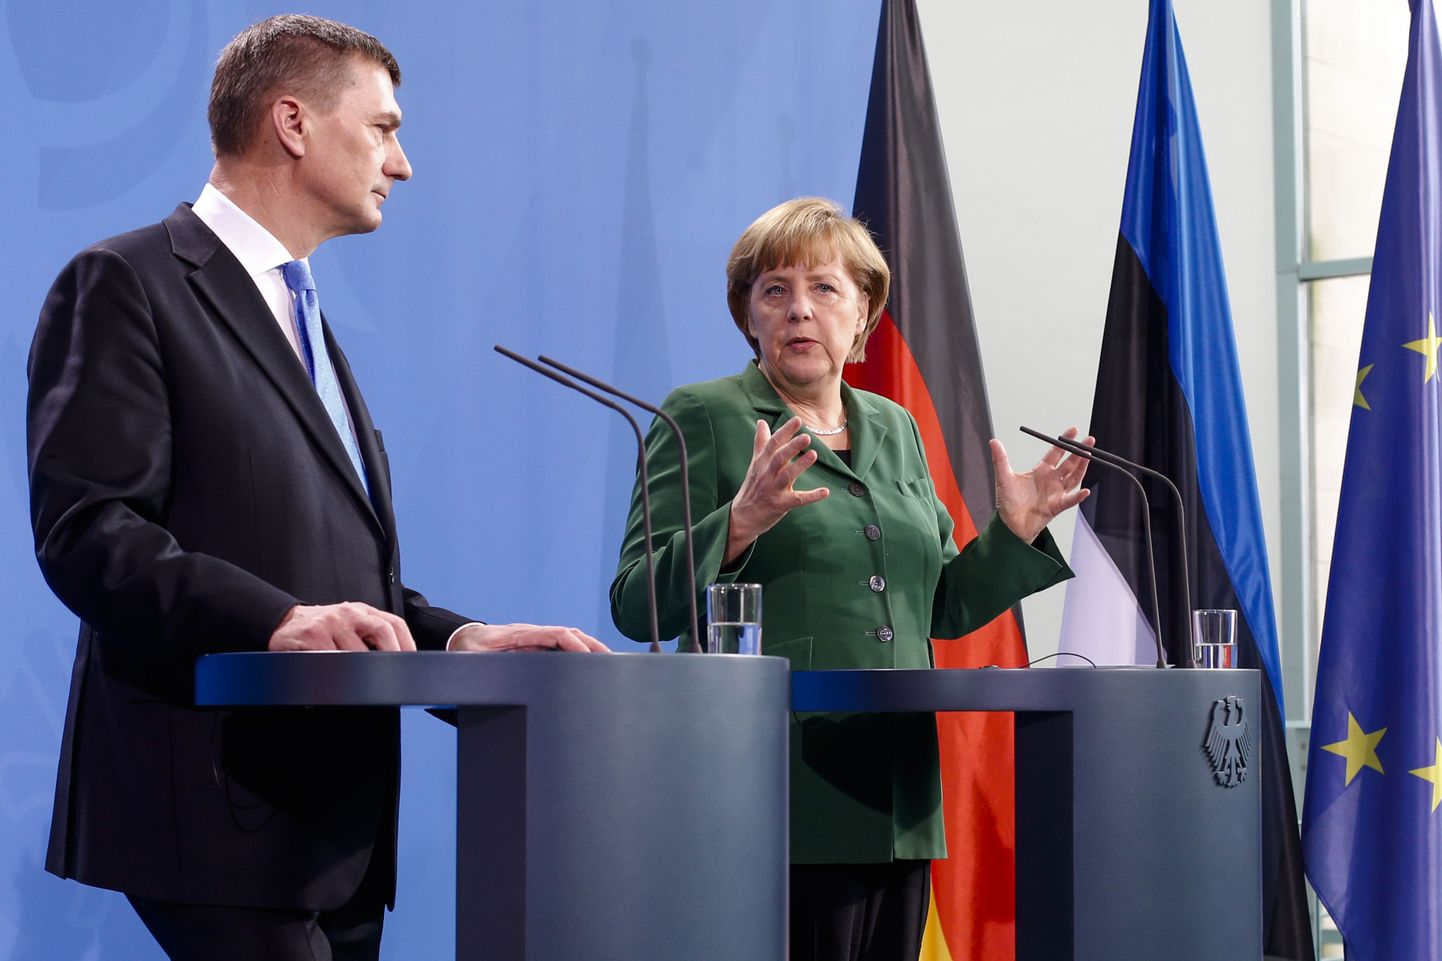 Saksa kantsler Angela Merkel ja Eesti peaminister Andrus Ansip.